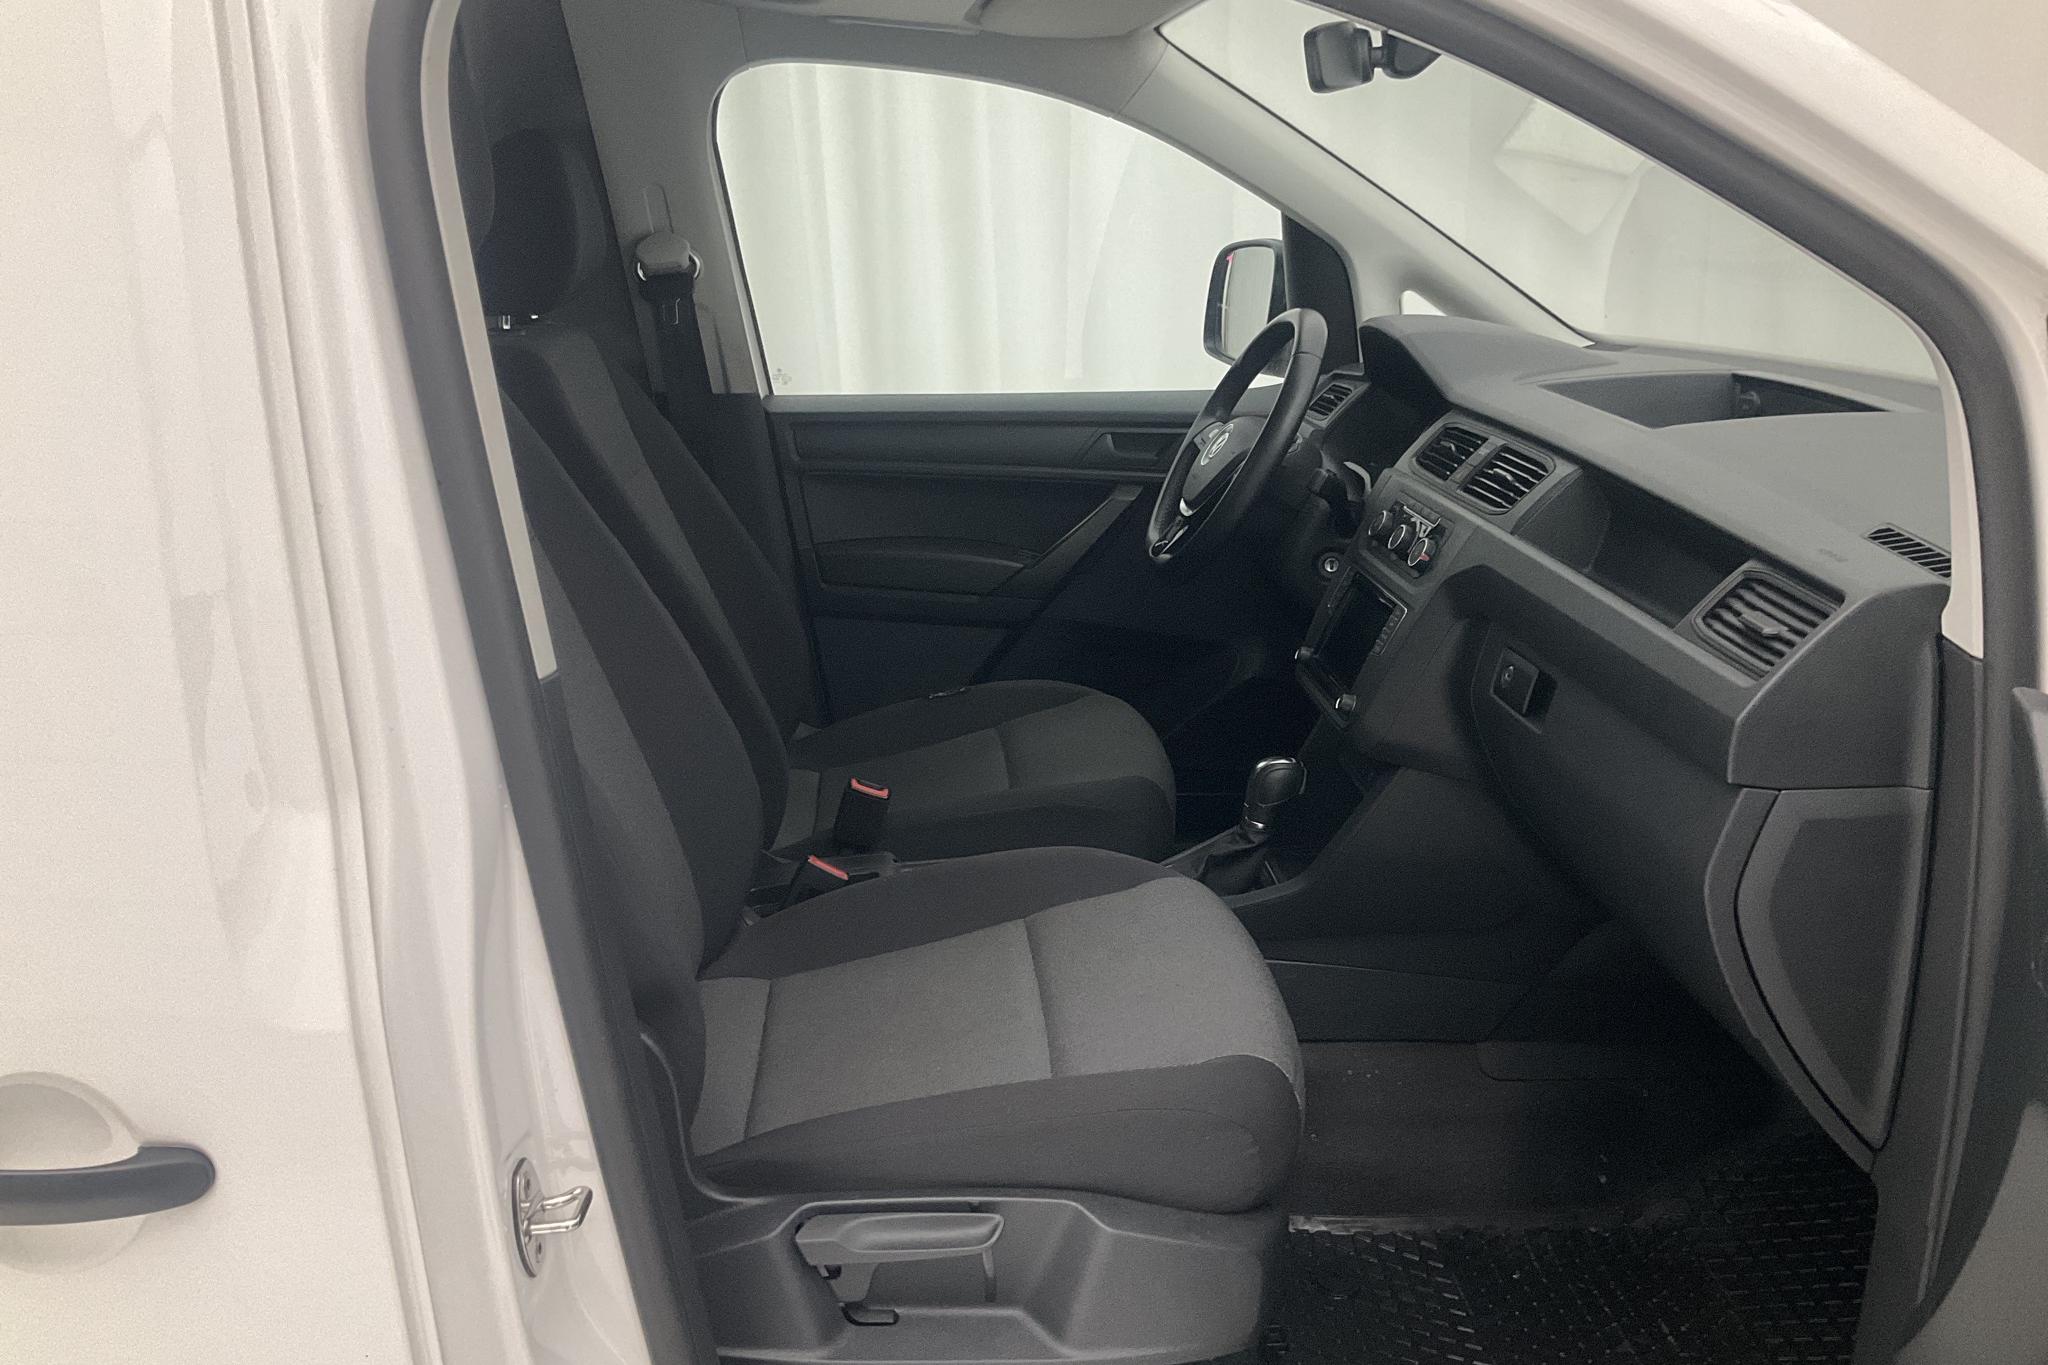 VW Caddy Maxi 2.0 TDI (102hk) - 4 863 mil - Automat - vit - 2020